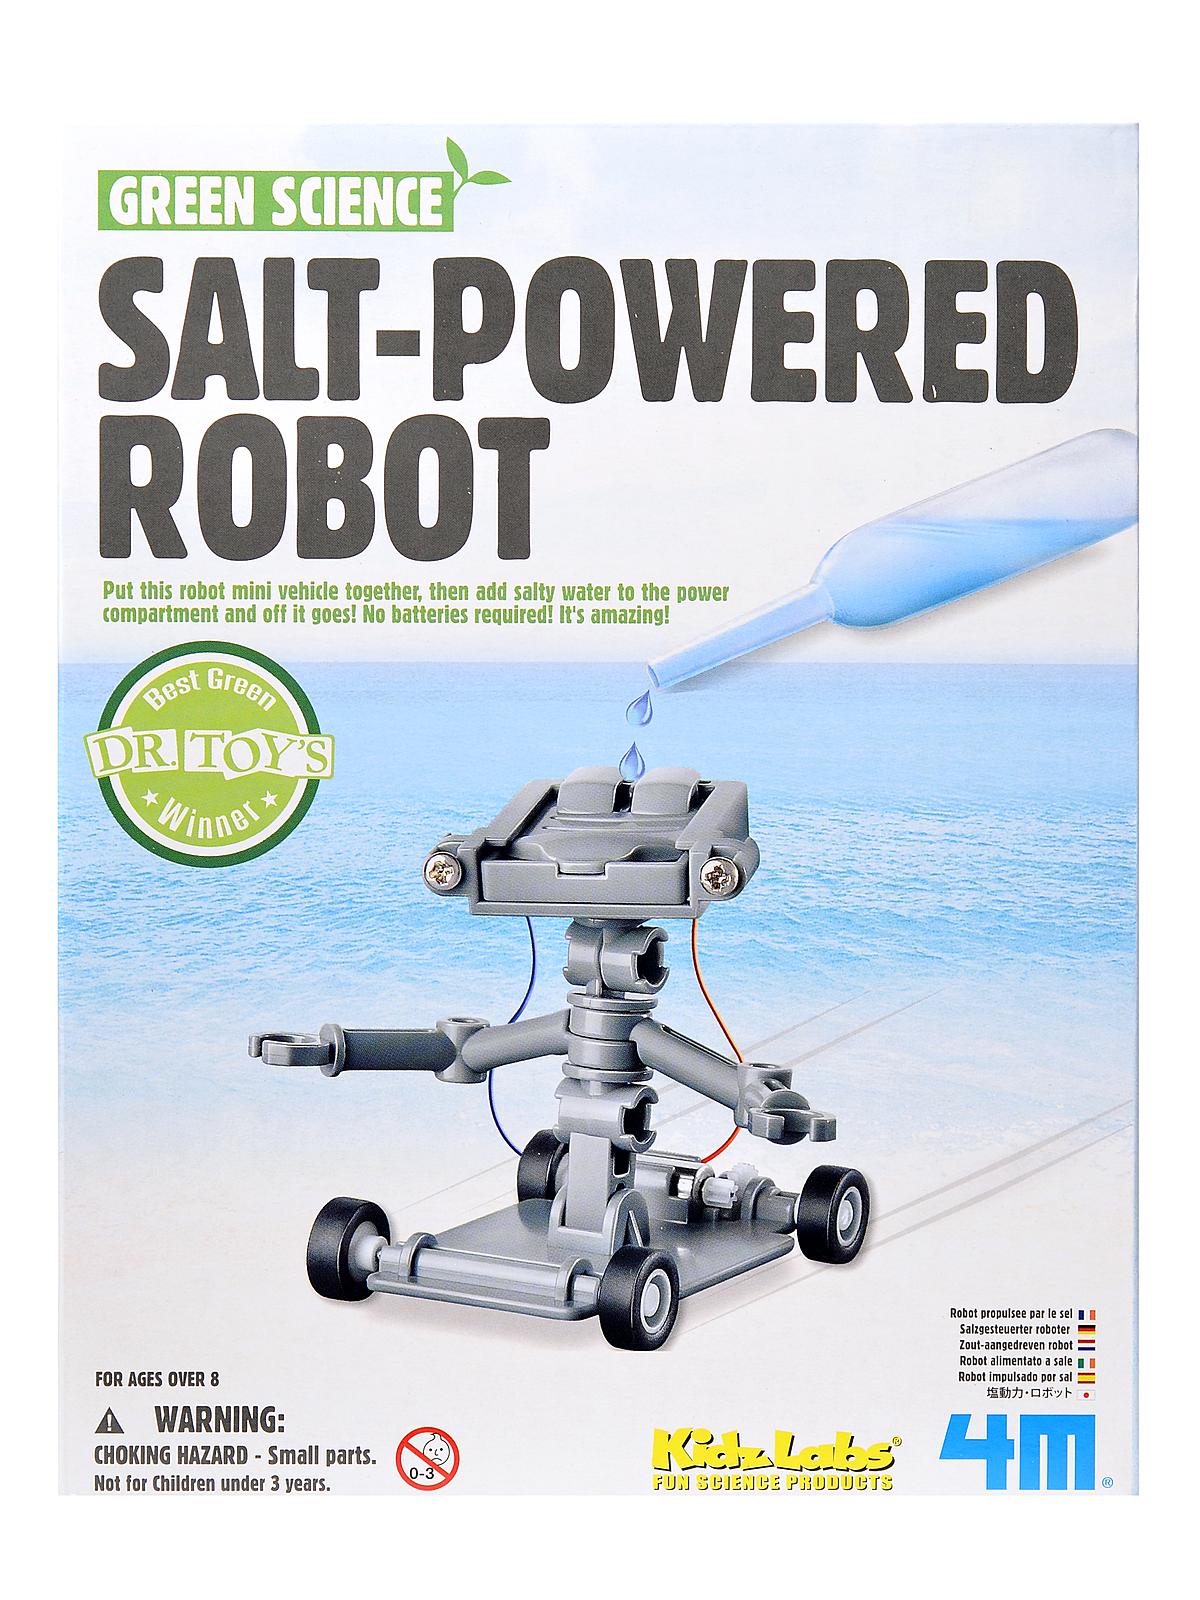 Salt-powered Robot Each